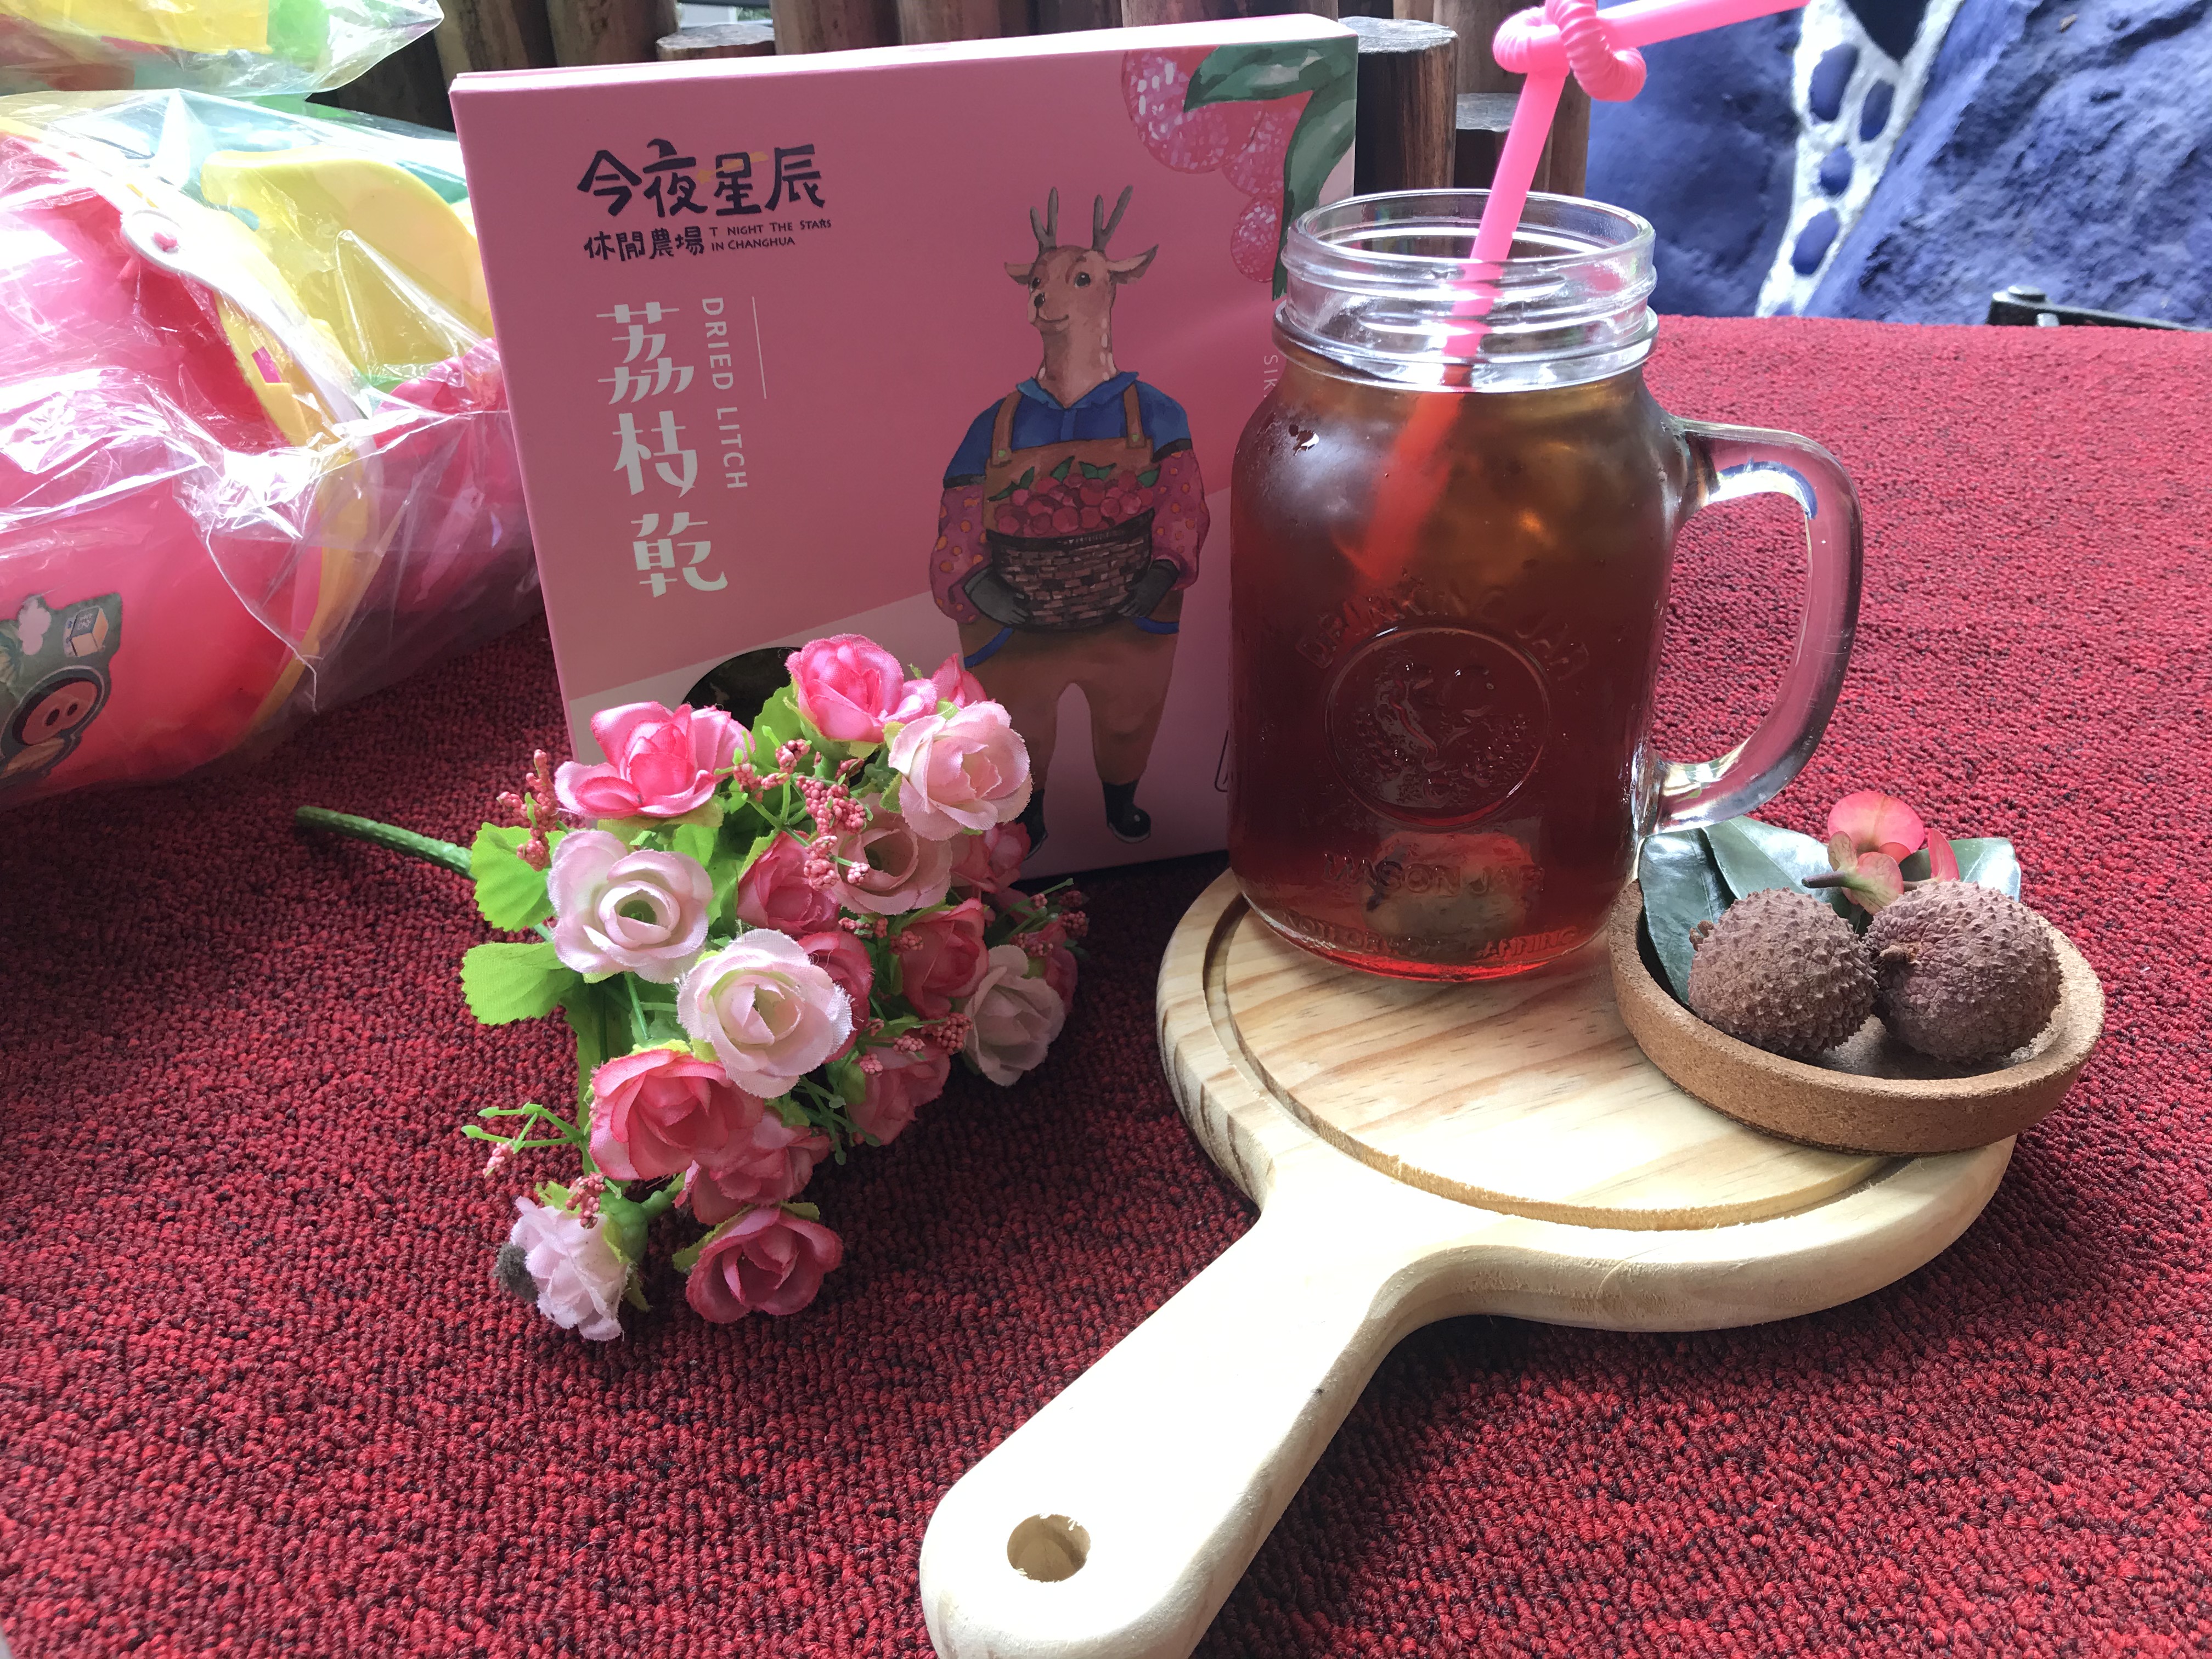 夏天來杯冰涼的鮮荔枝果茶，讓人暑氣全消。